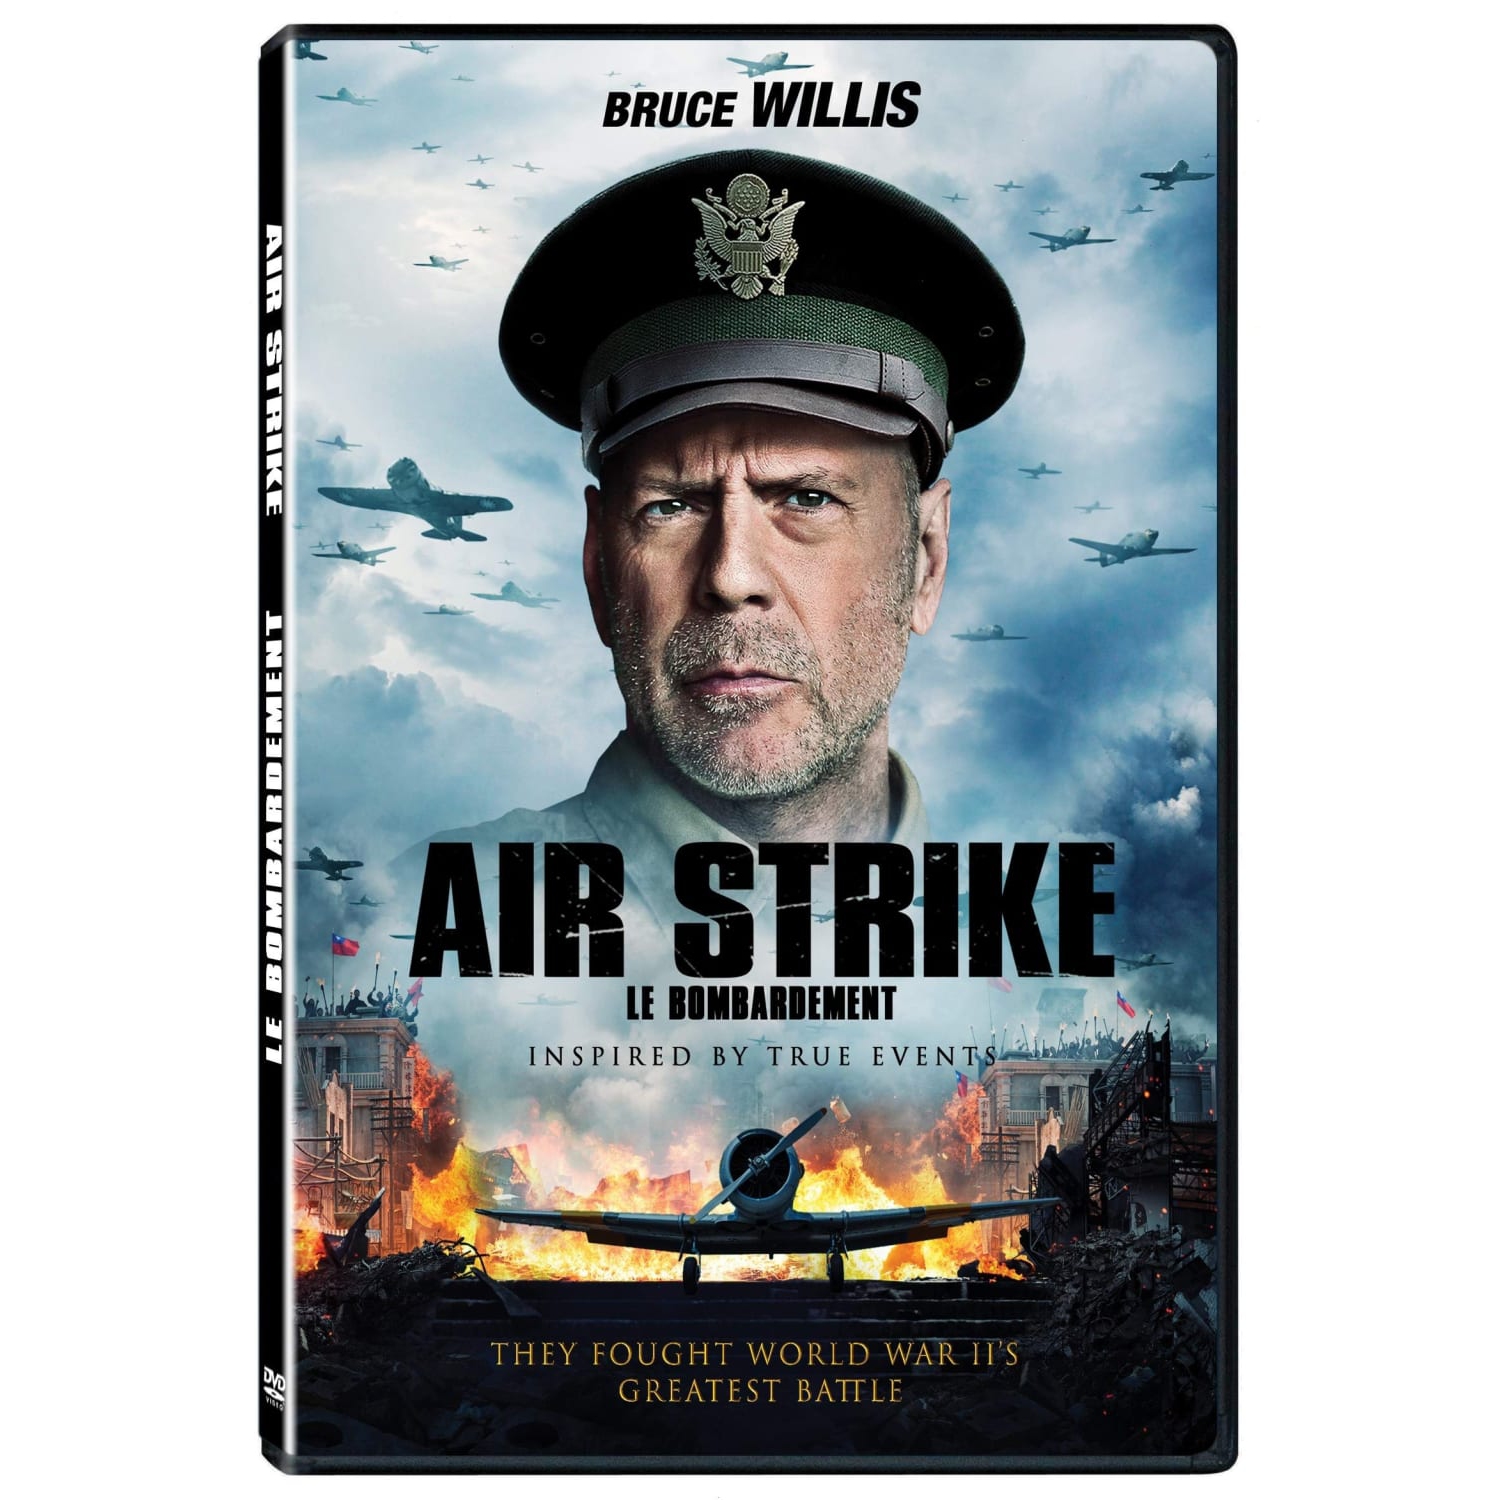 Air Strike (DVD)